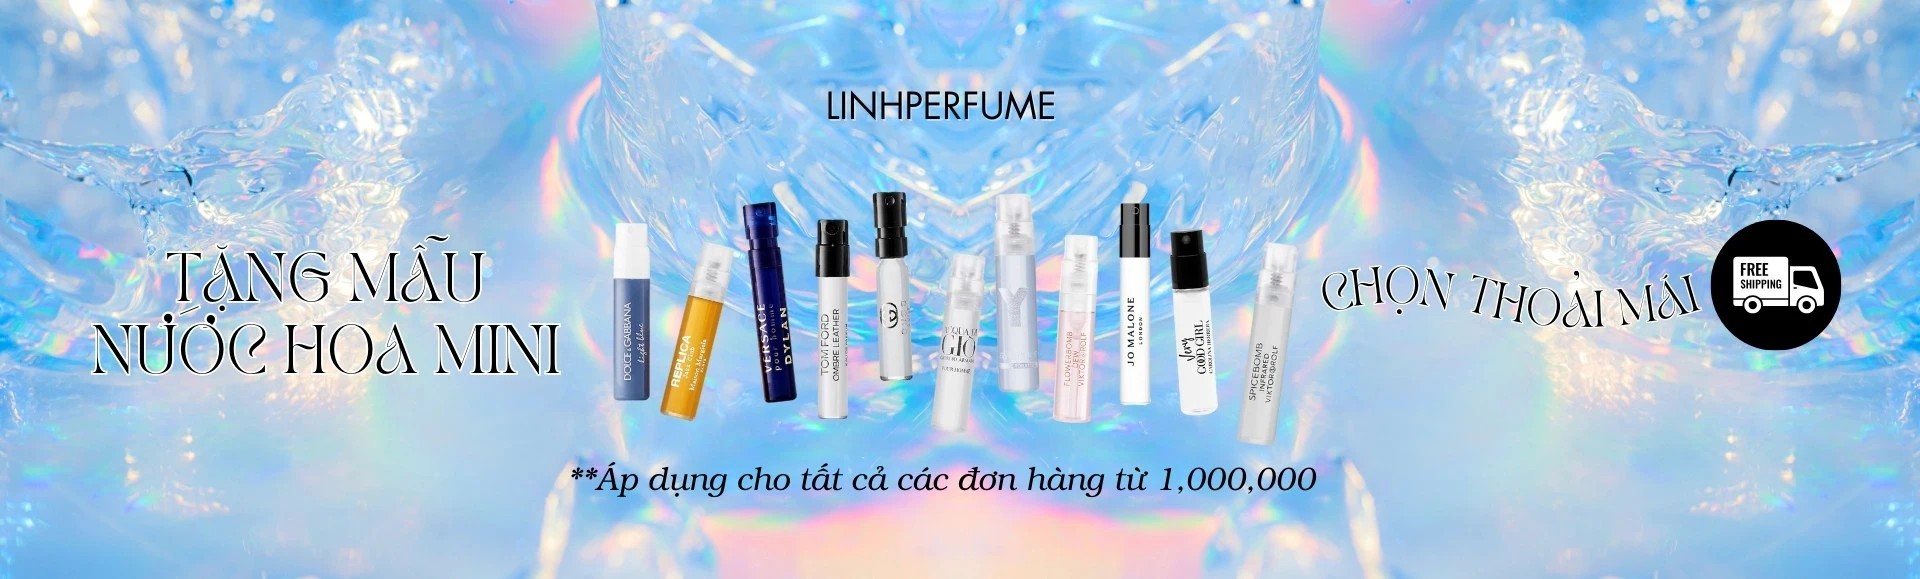 Linh Perfume